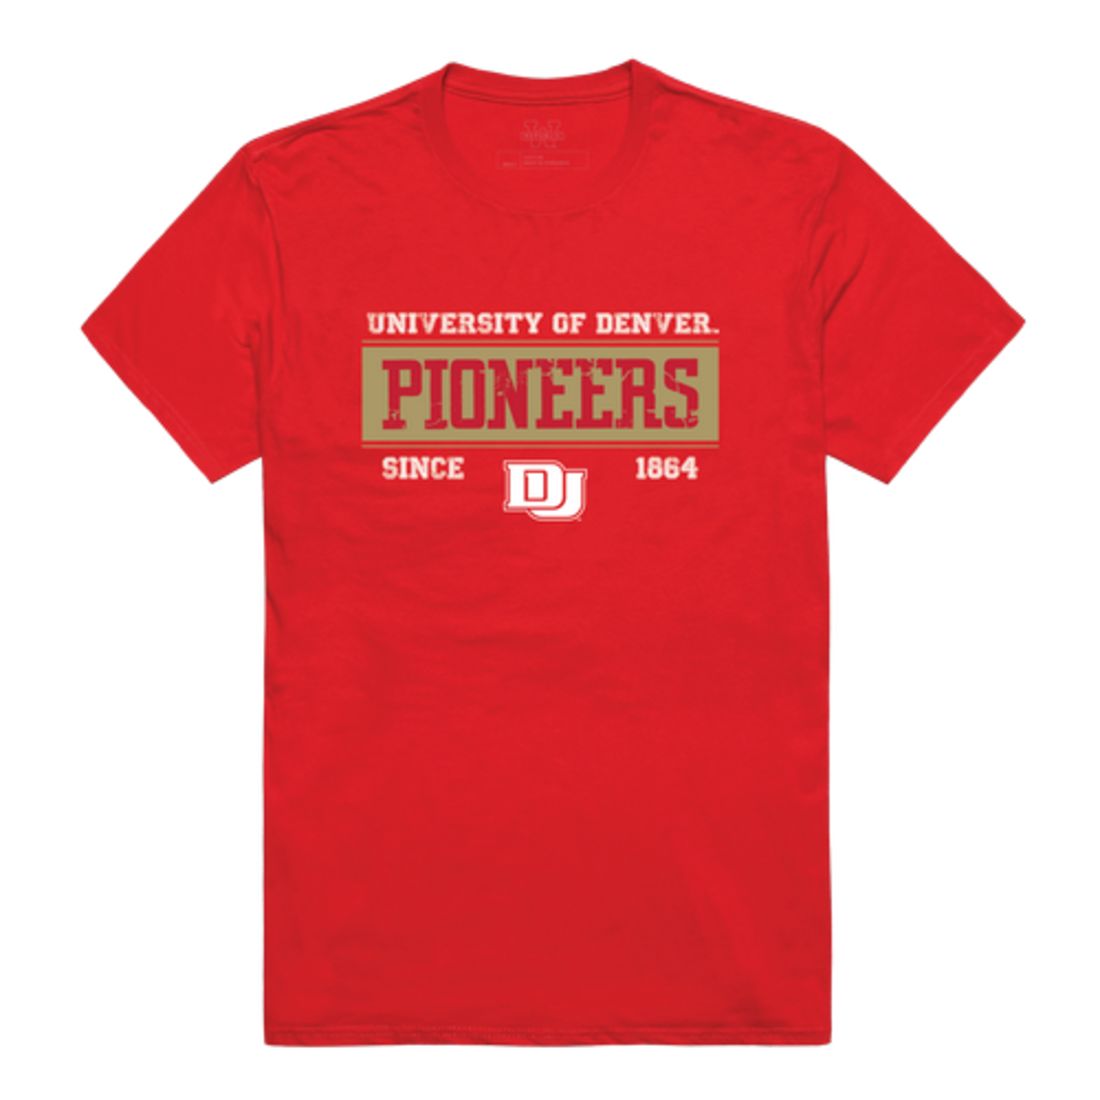 University of Denver Pioneers Established T-Shirt